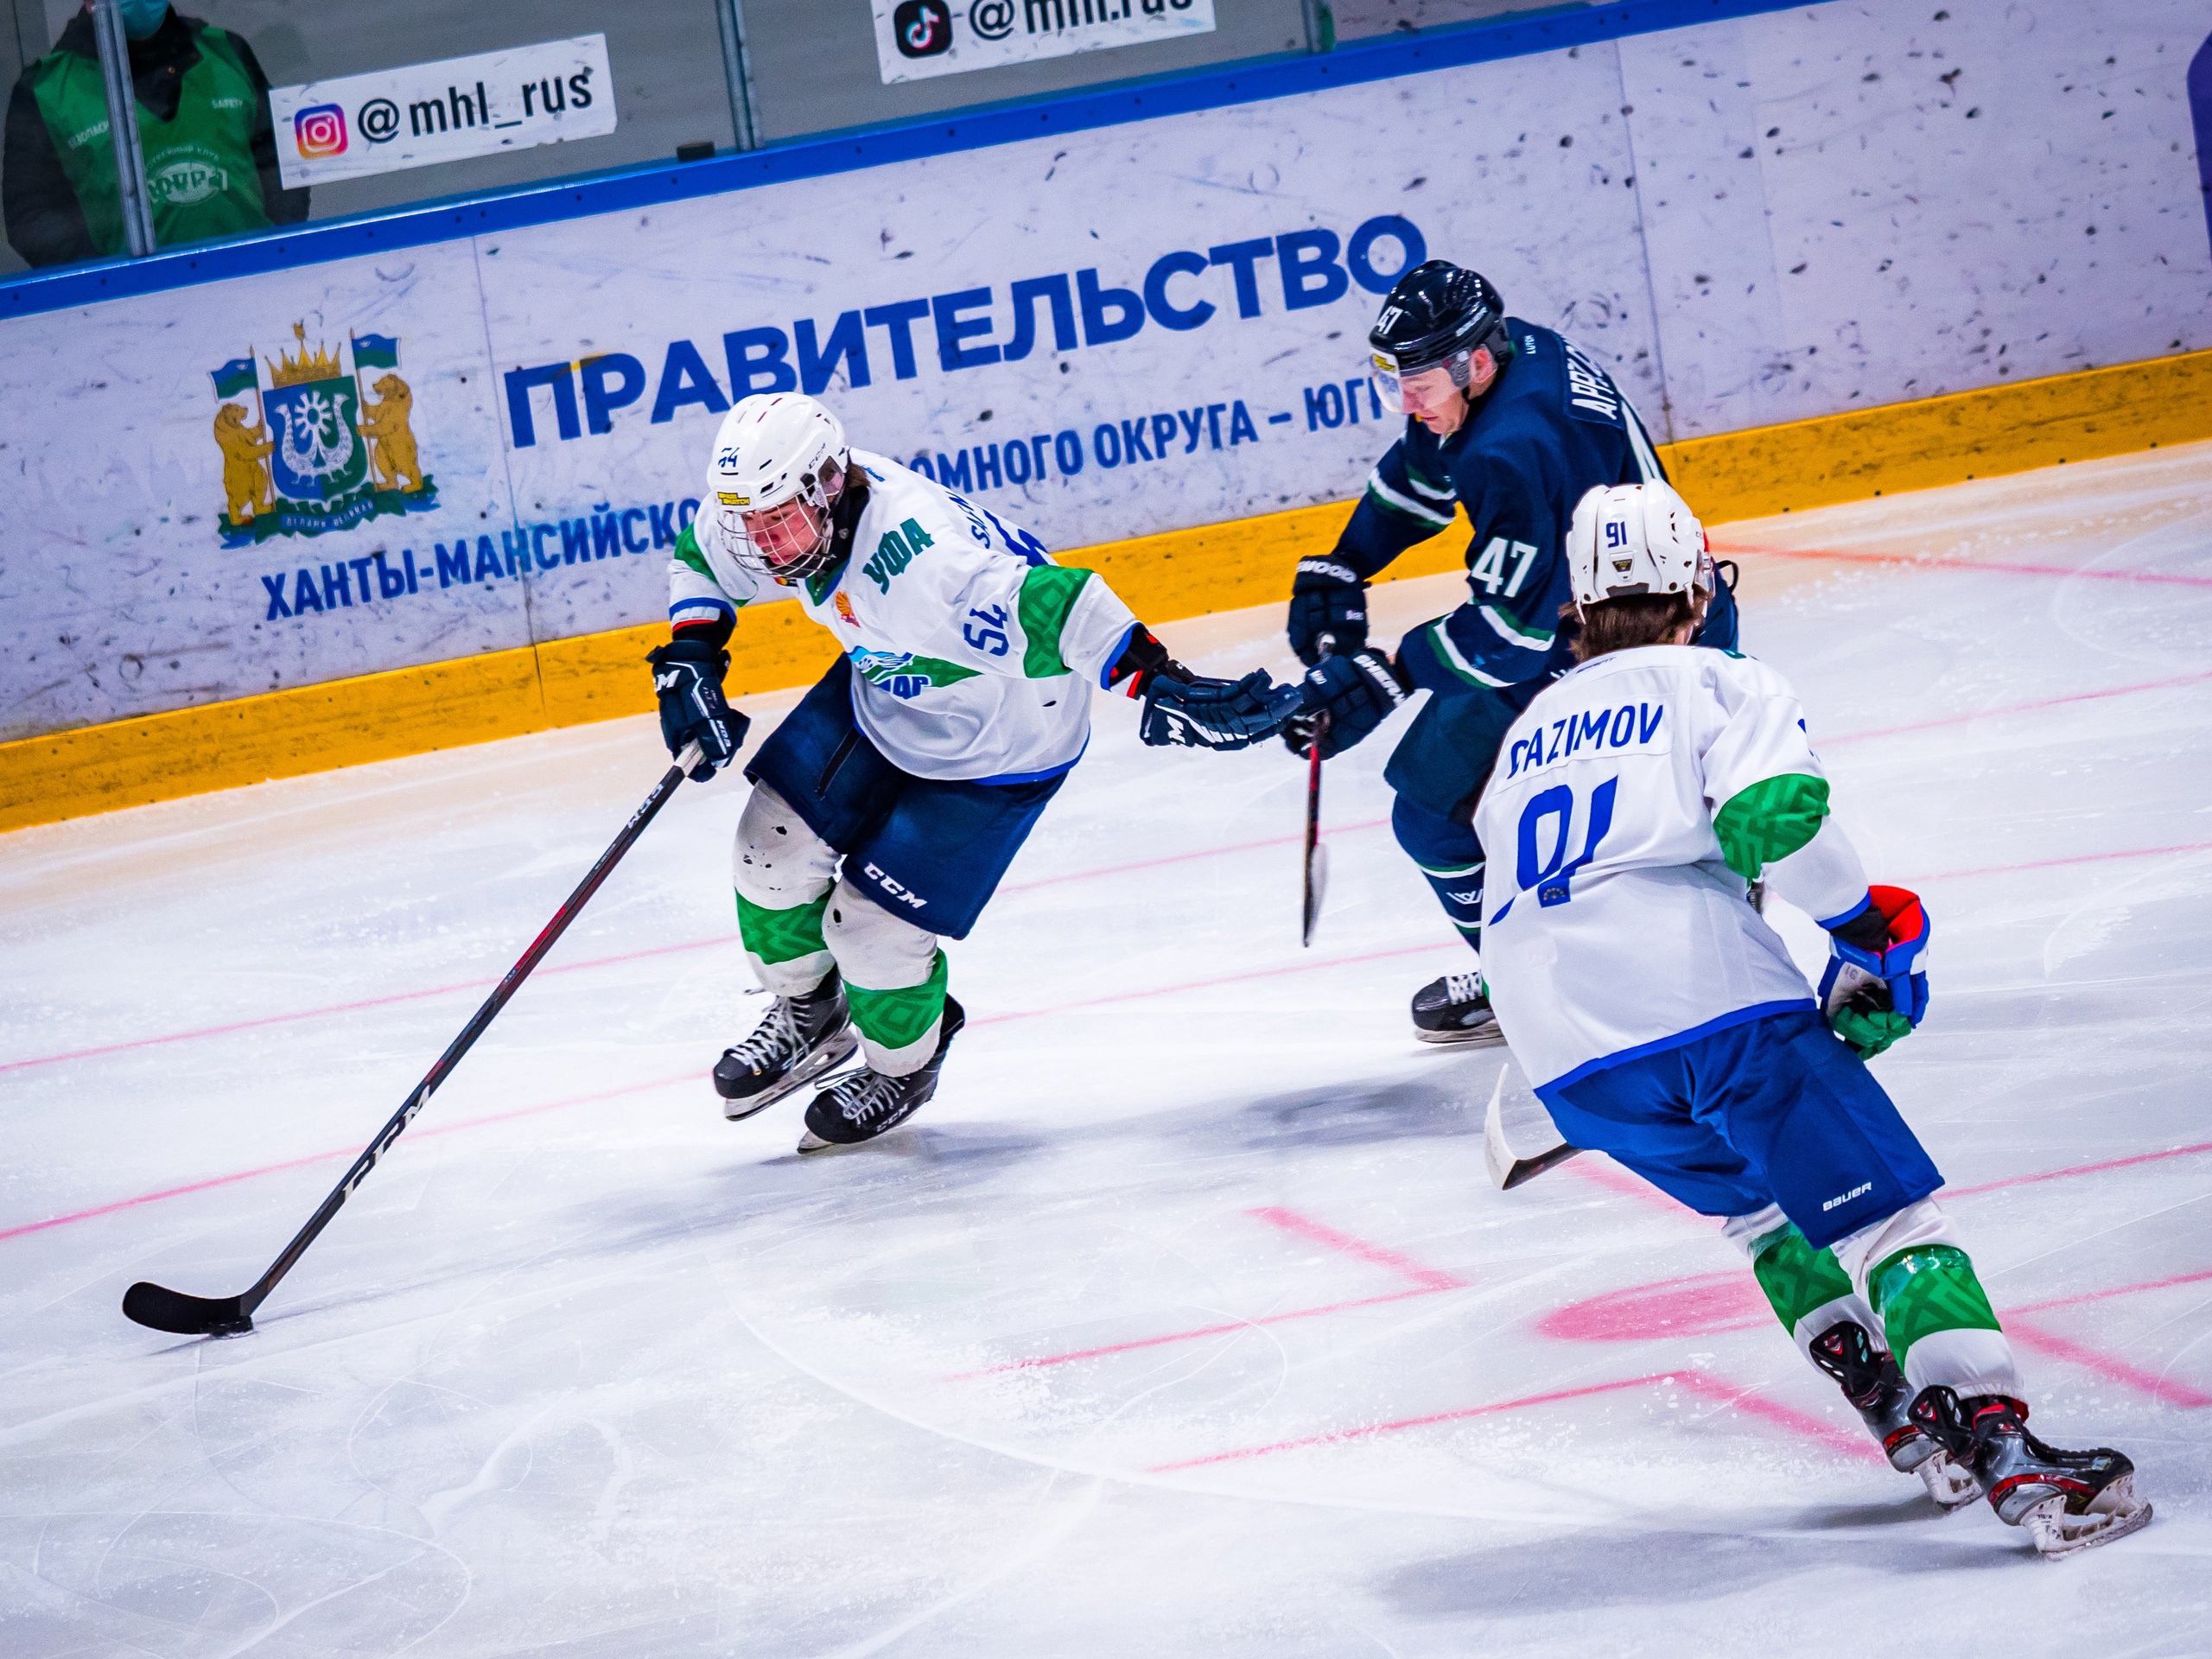 Сергей Сафин Трегубов: «Получился классический молодёжный хоккей»